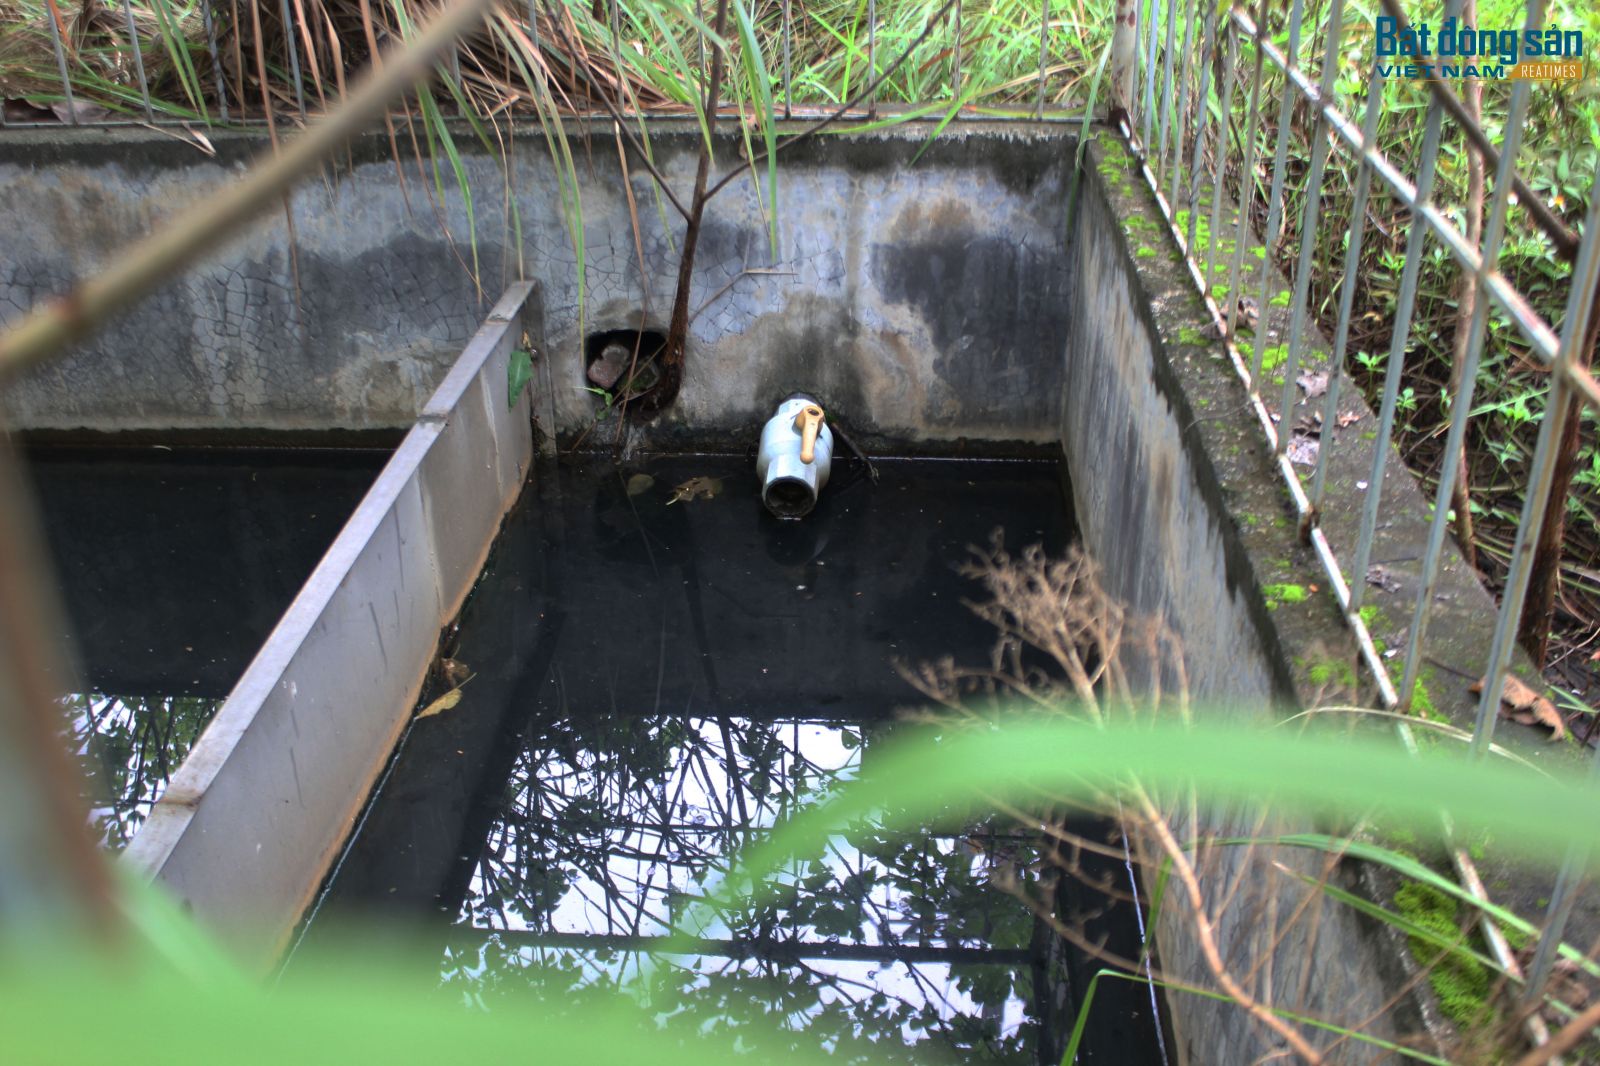 Trạm xử lý nước thải tập trung chưa được vận hành nên nước thải trong quá trình sản xuất và nước thải sinh hoạt, các doanh nghiệp tự xử lý trước khi thải ra môi trường.